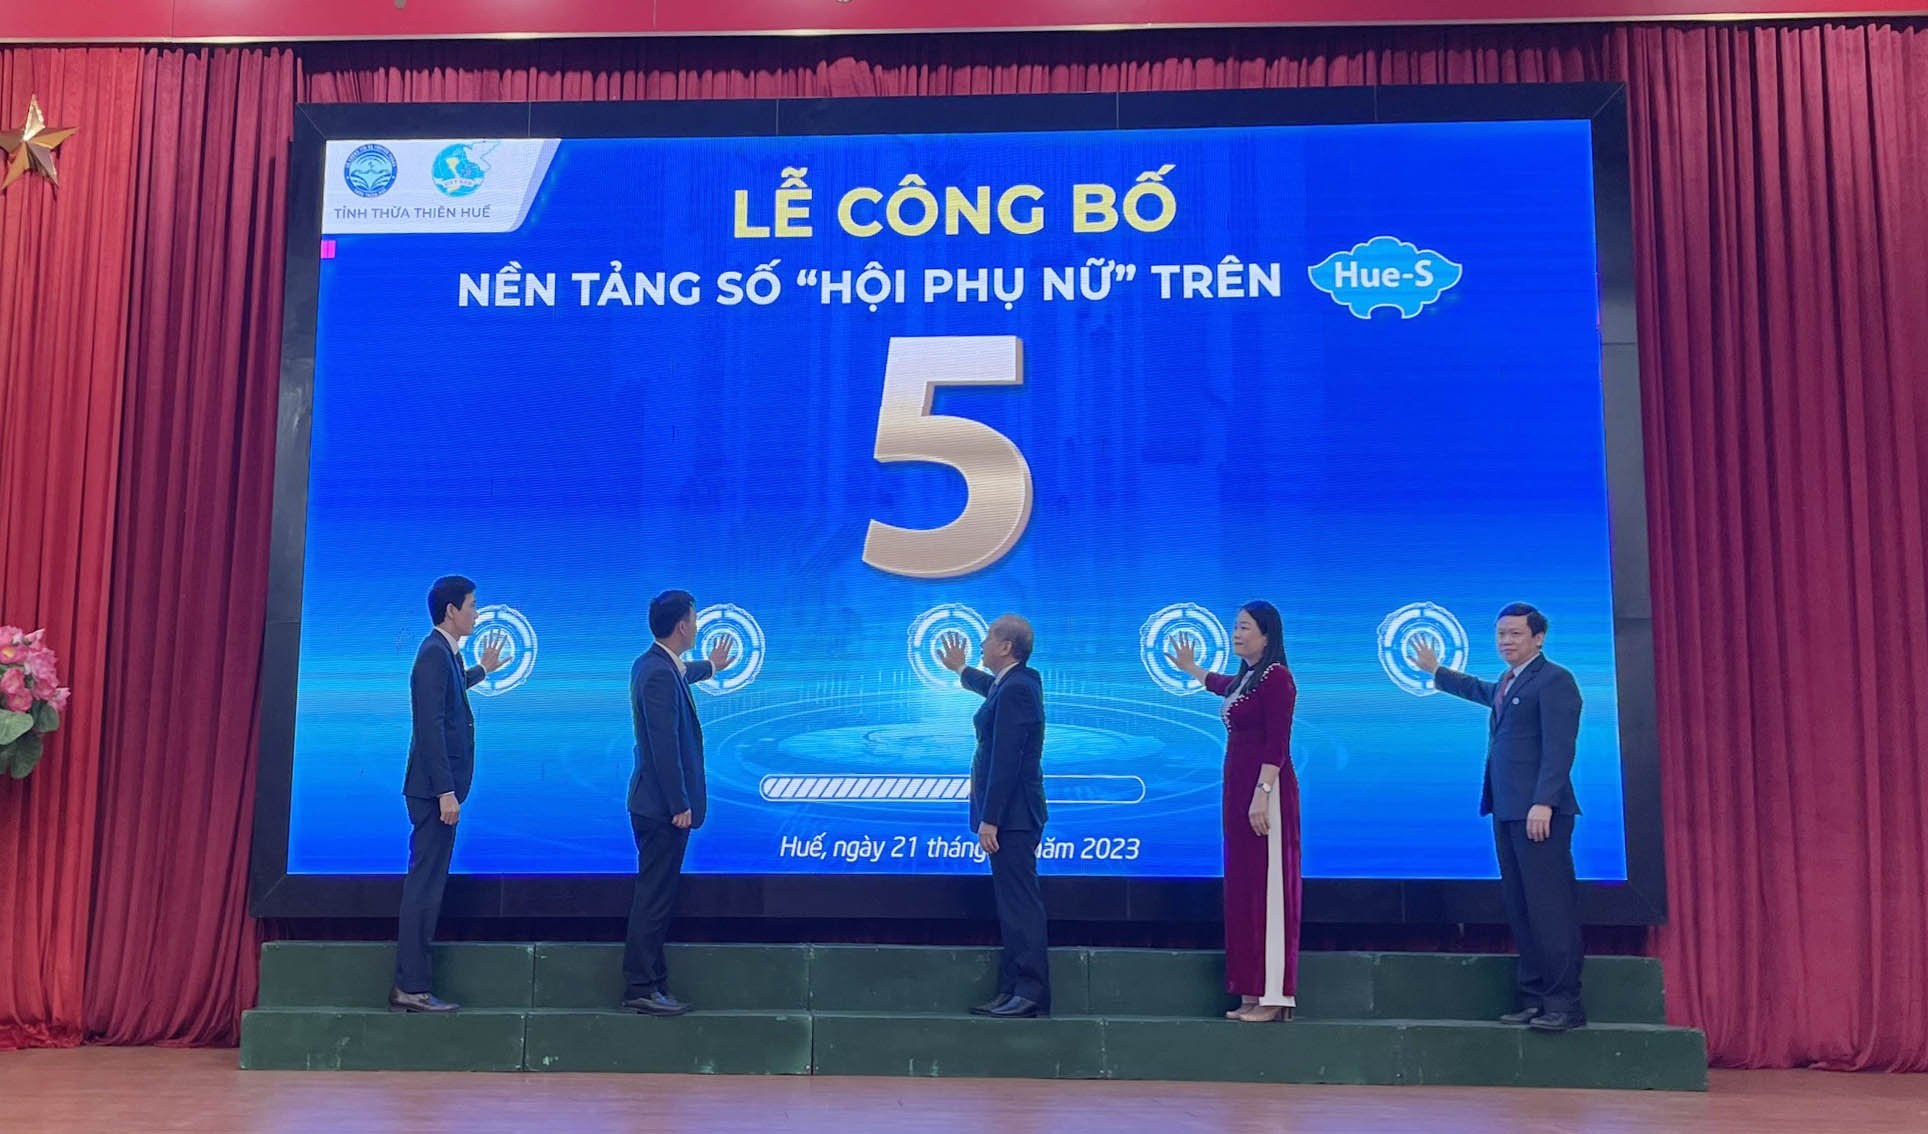 Ra mắt nền tảng số "Hội phụ nữ" trên Hue-S